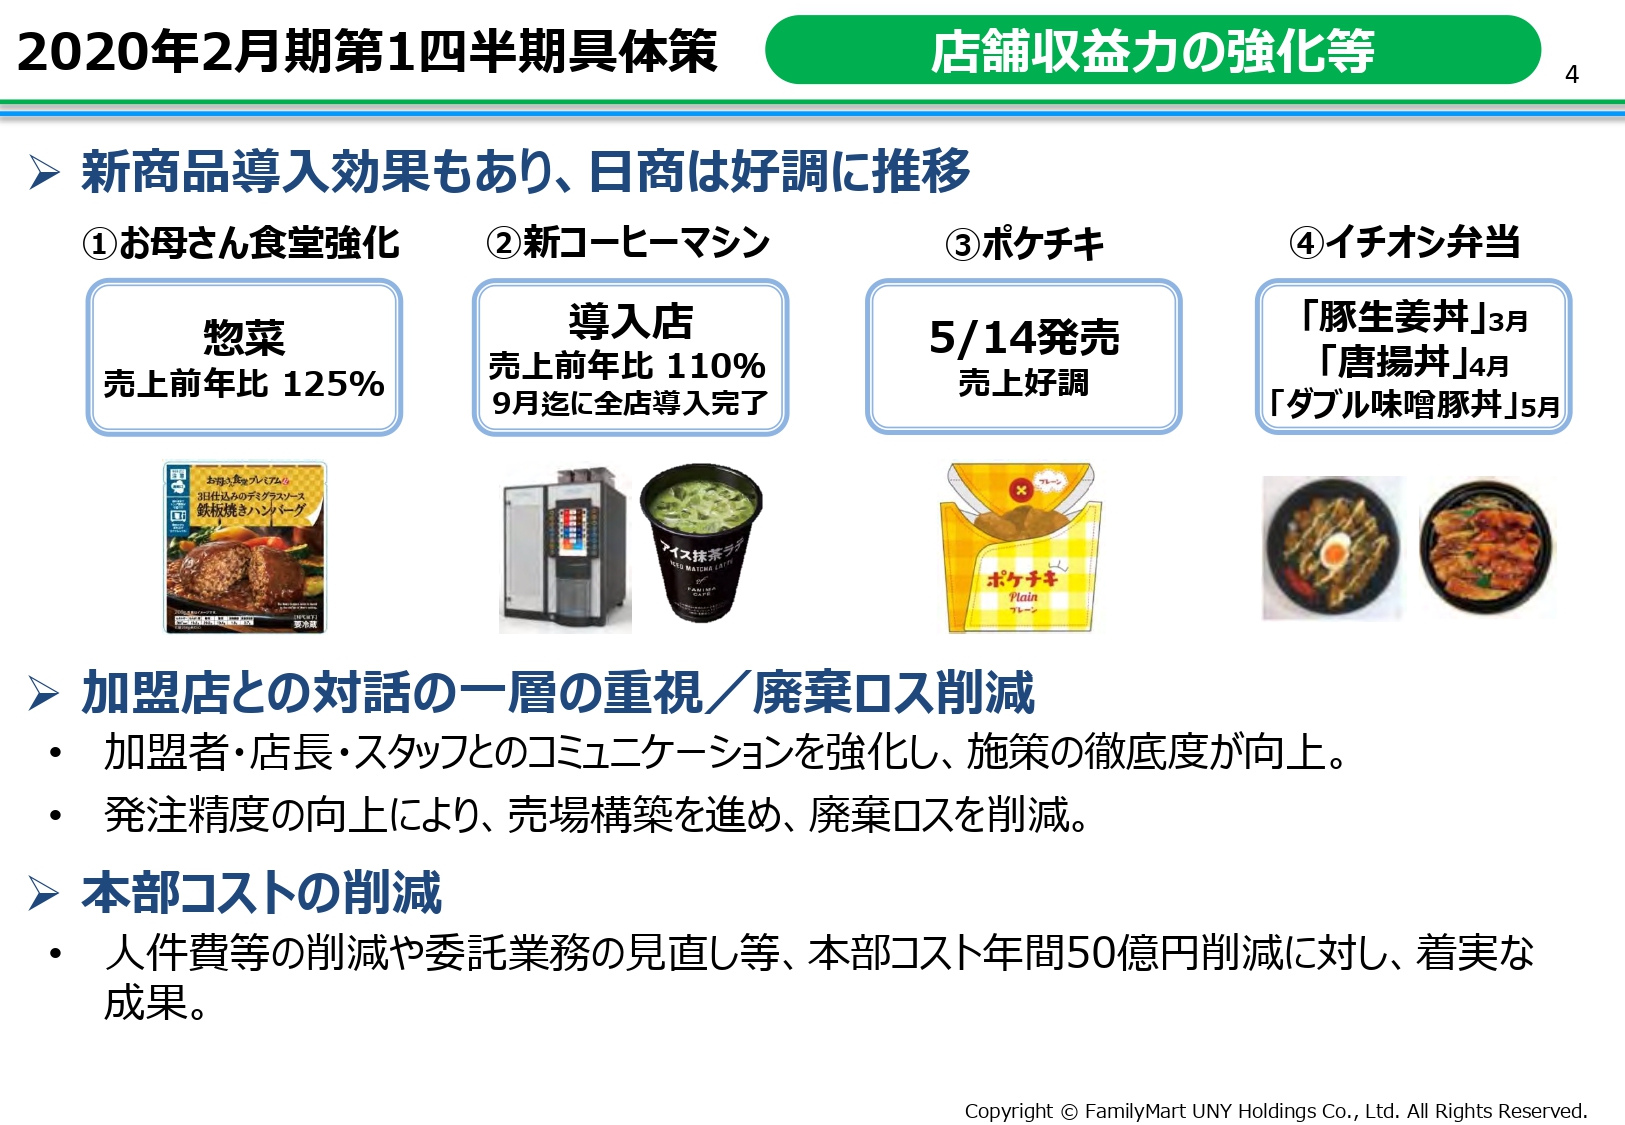 ユニー・ファミマHD、カネ美食品の連結除外やFM直営店の減少による売上低下で営業益が259億円減